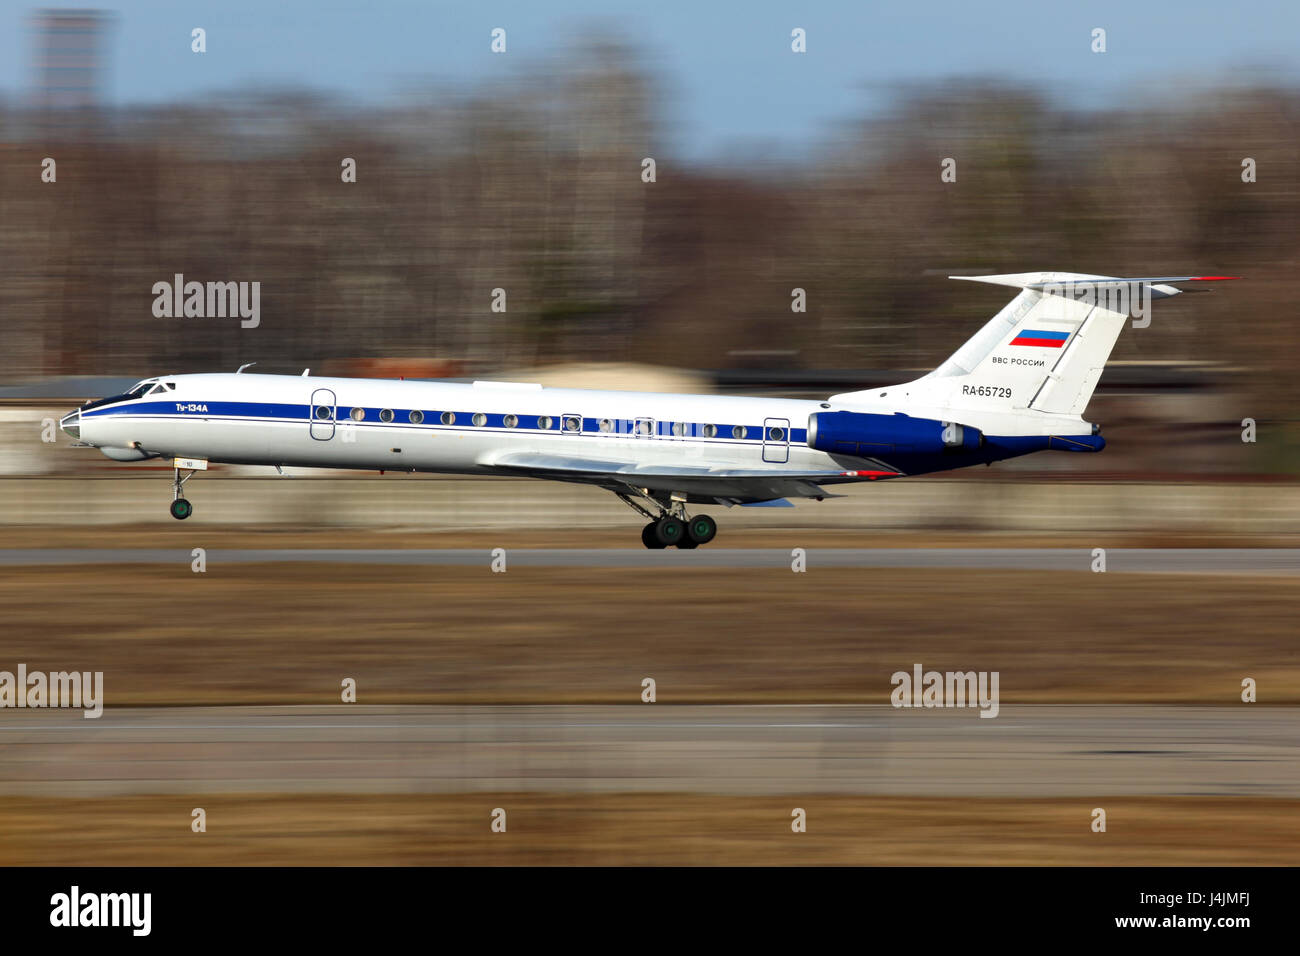 Am Chkalovsky Prospekt, Moskau, Russland - 12 April 2011: Tupolev Tu-134A-3 RA -65729 der russischen Luftwaffe Landung am Chkalovsky Prospekt. Stockfoto